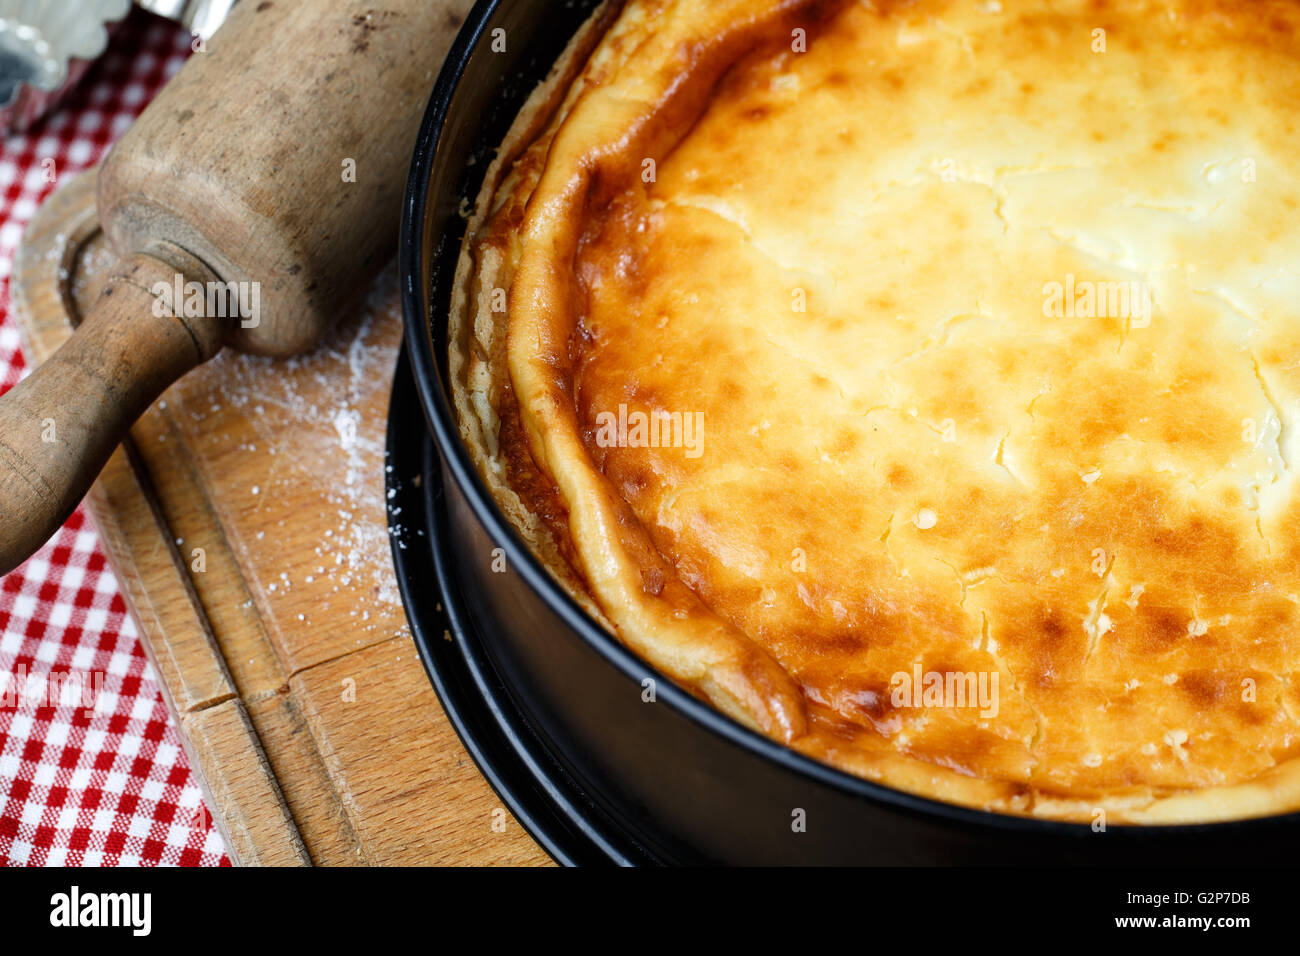 Caliente casero tarta de queso en el molde para hornear recién salido del horno Foto de stock